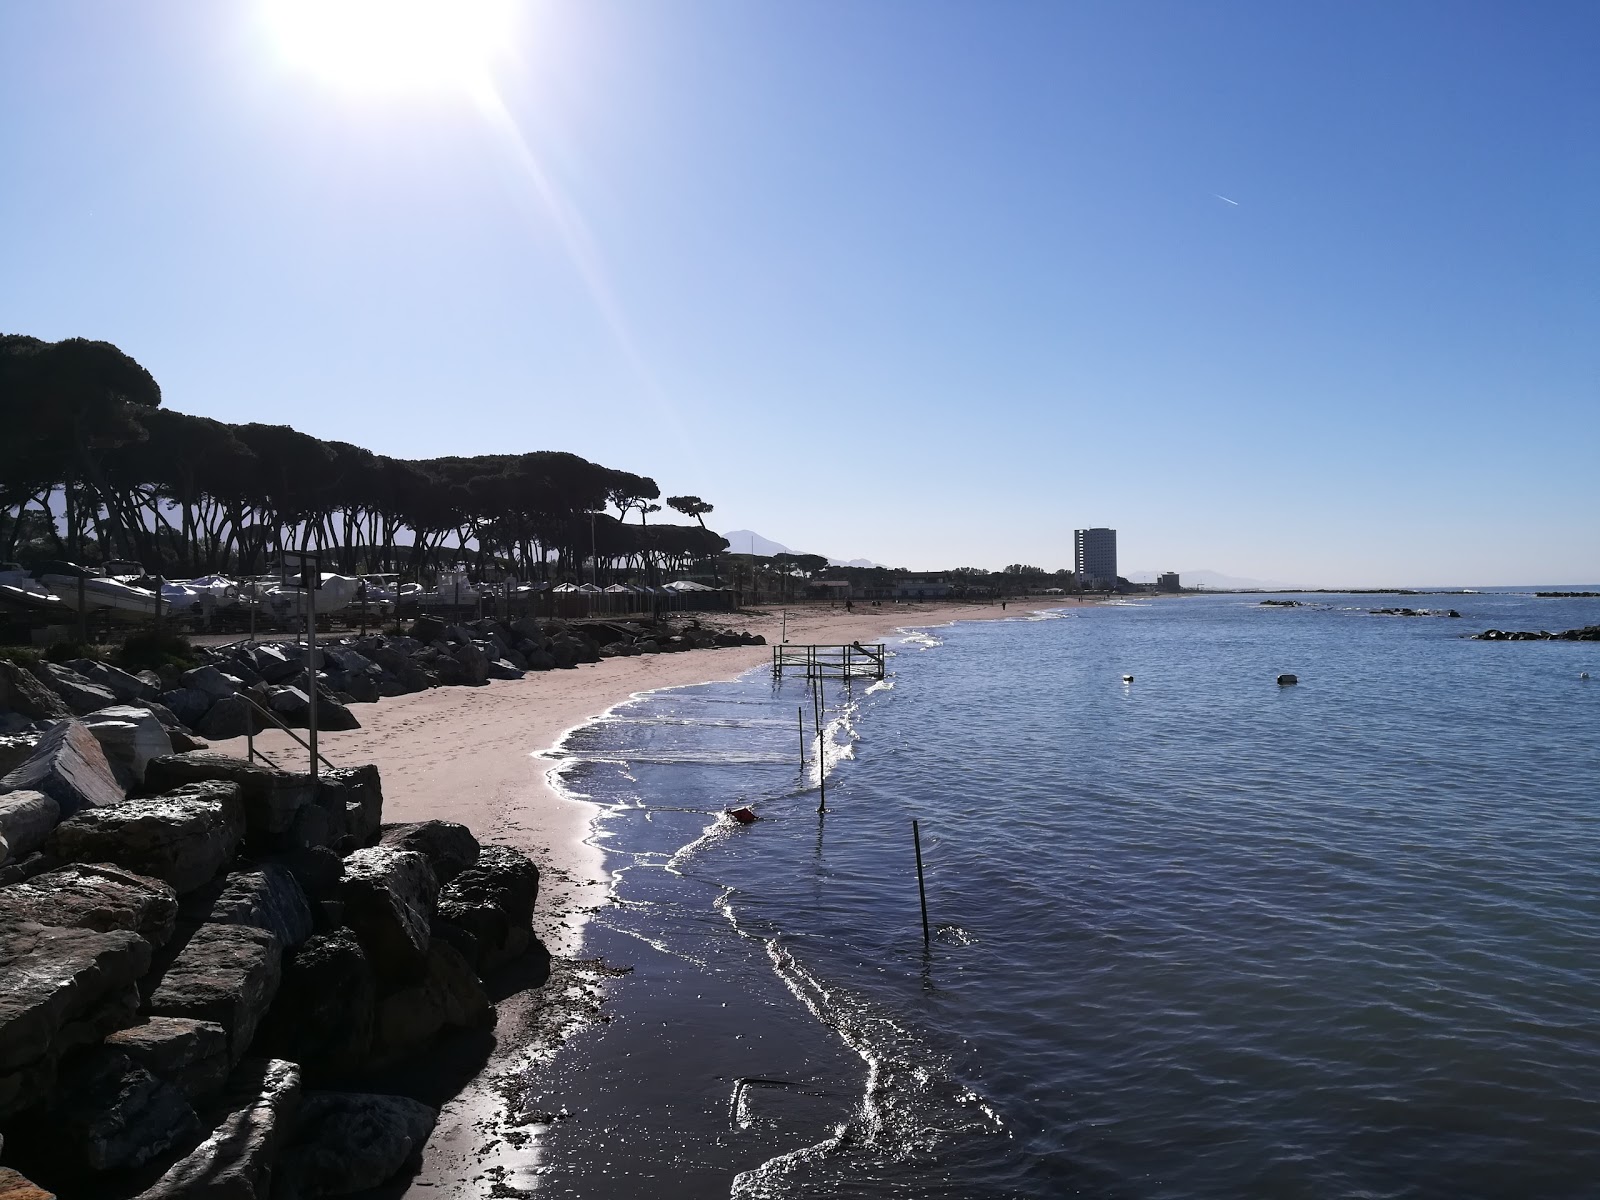 Foto von Ostello beach mit blaues wasser Oberfläche